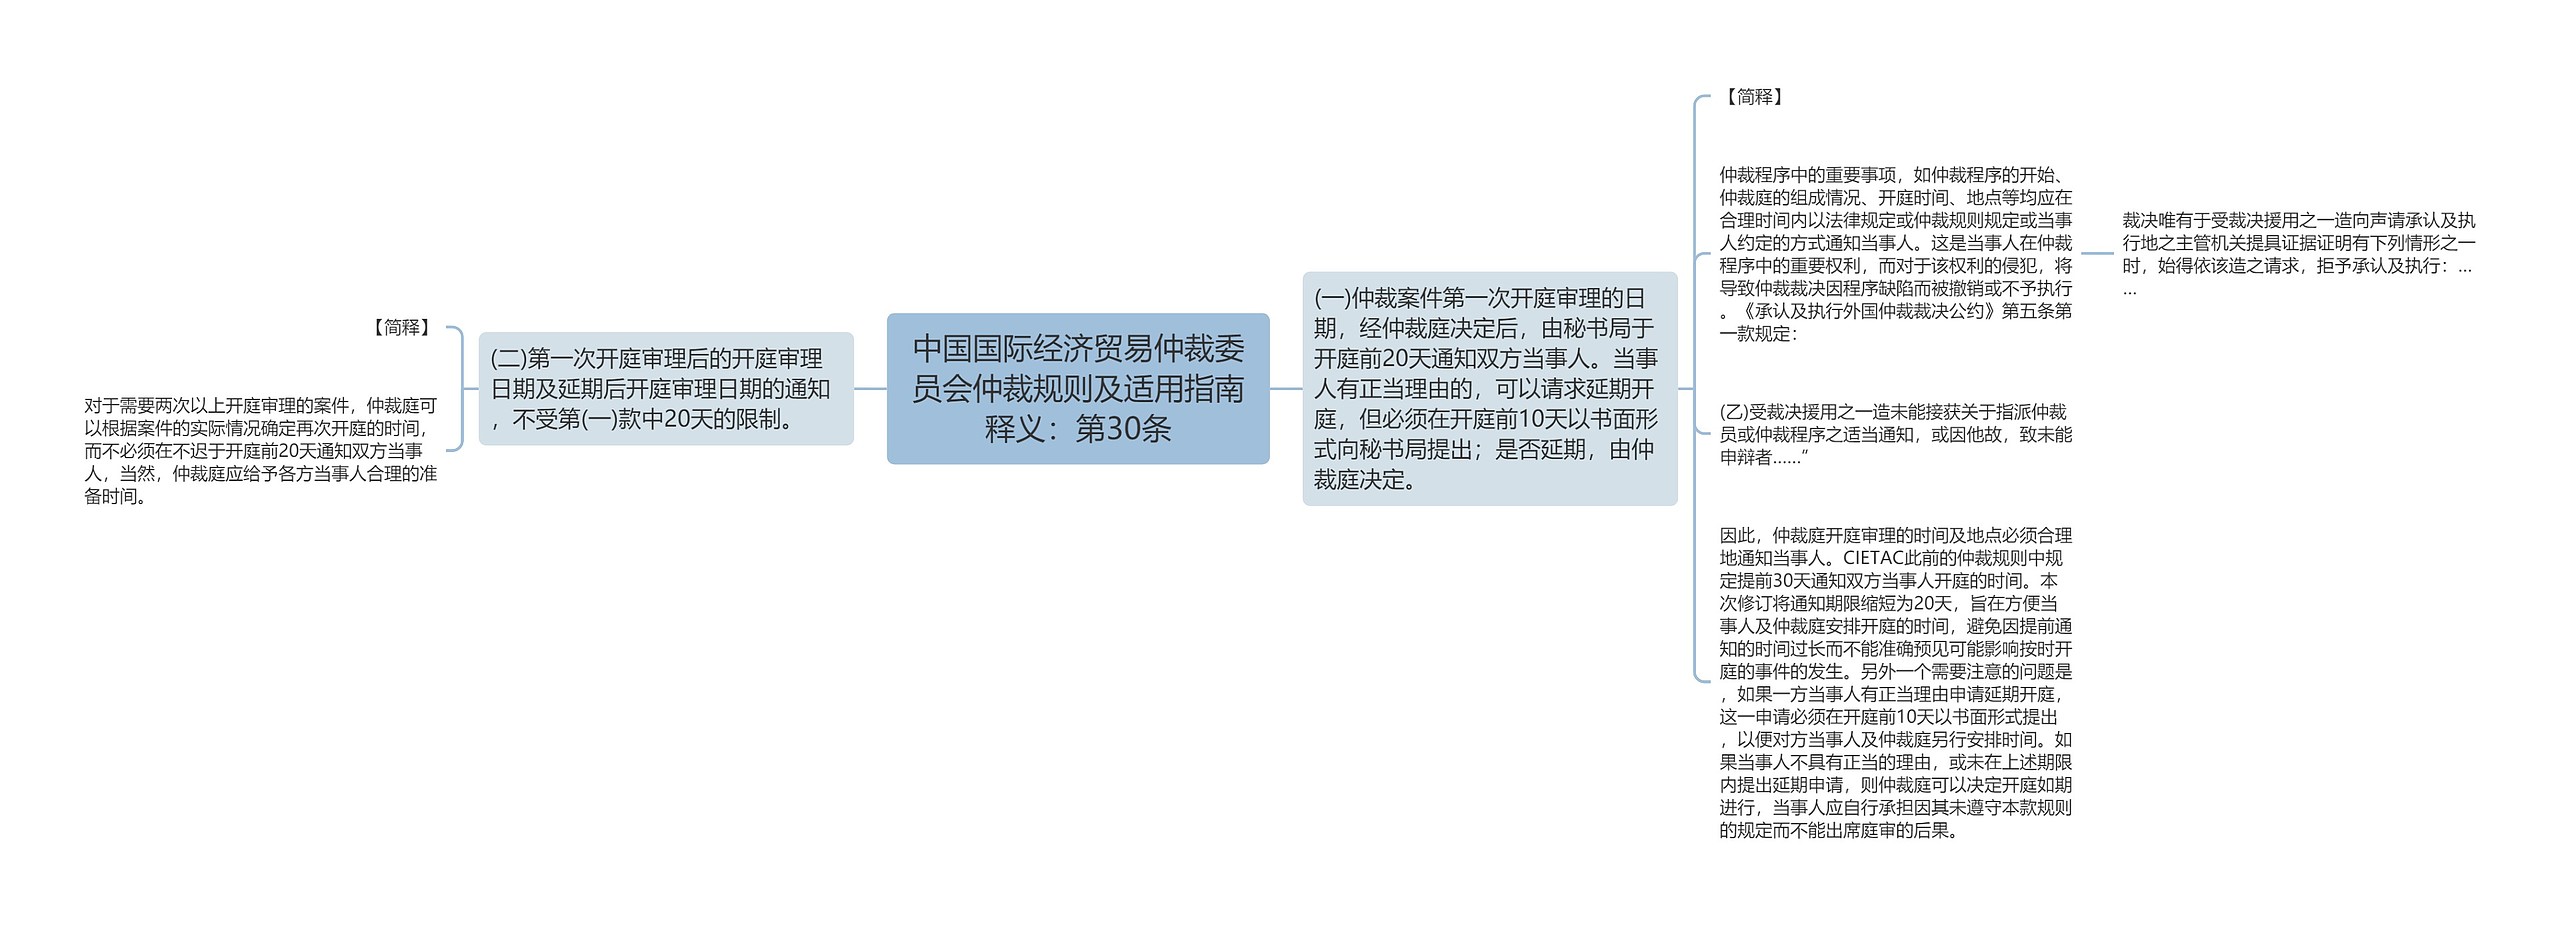 中国国际经济贸易仲裁委员会仲裁规则及适用指南释义：第30条